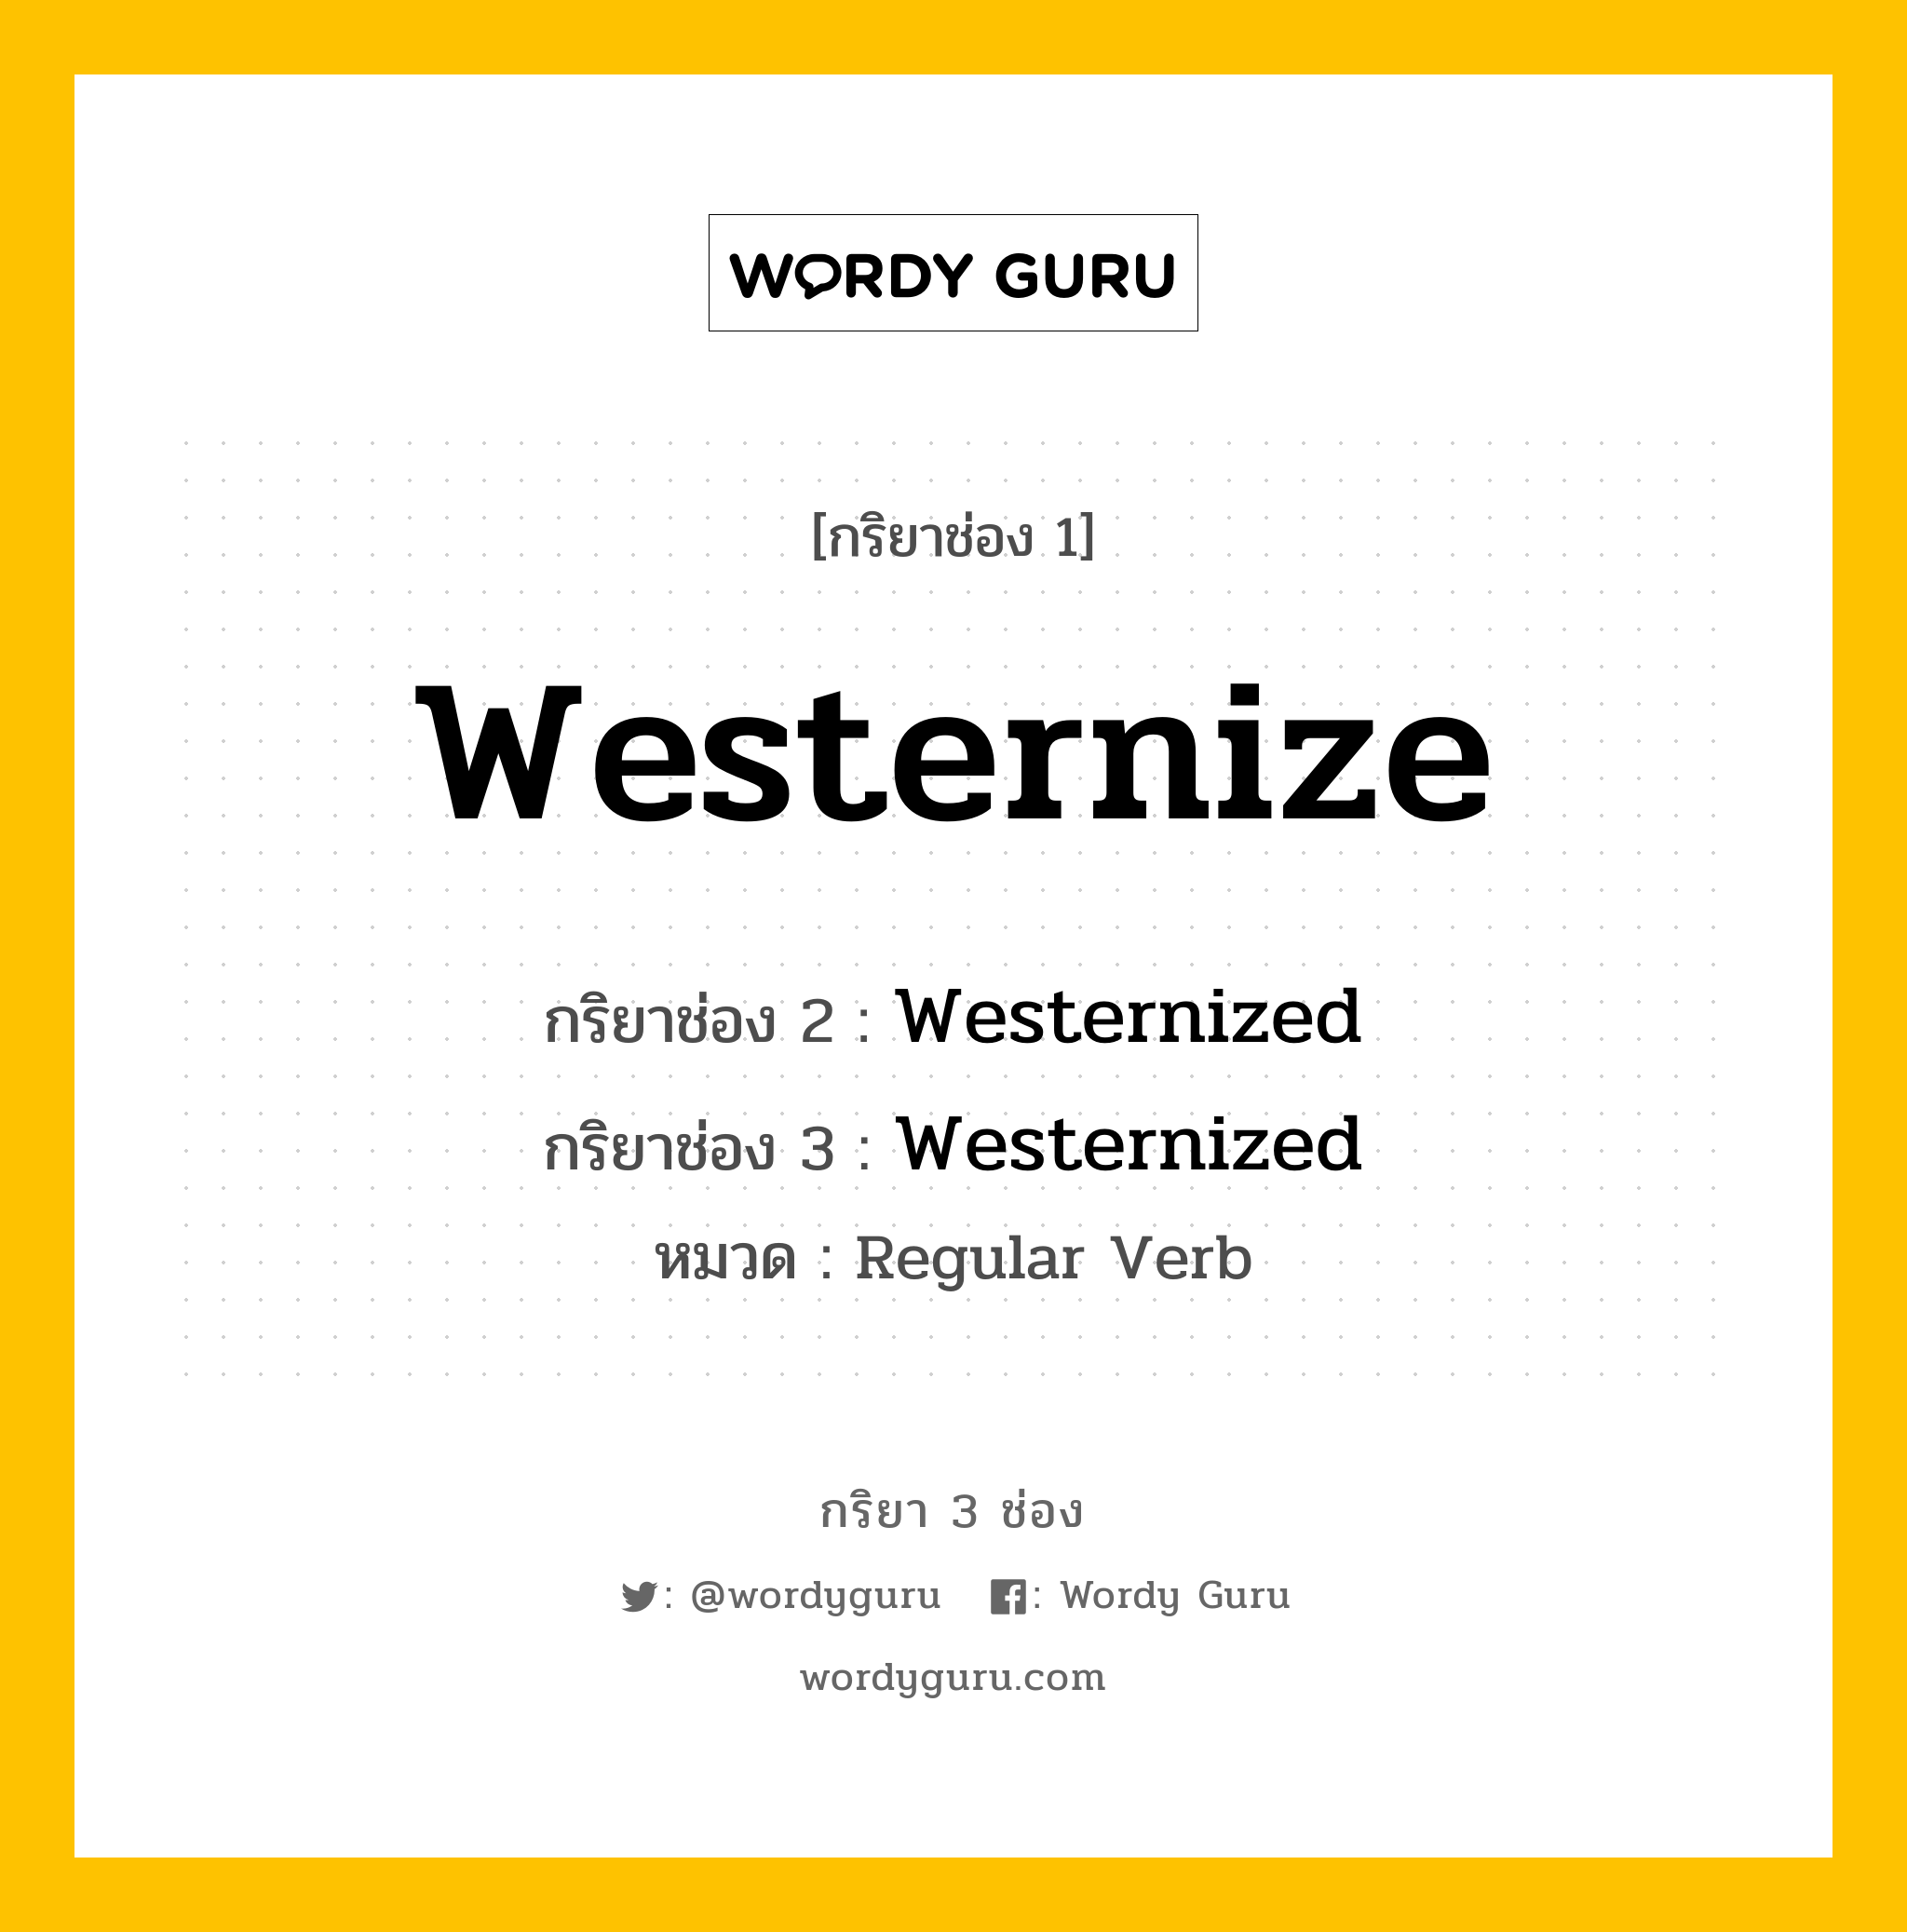 กริยา 3 ช่อง: Westernize ช่อง 2 Westernize ช่อง 3 คืออะไร, กริยาช่อง 1 Westernize กริยาช่อง 2 Westernized กริยาช่อง 3 Westernized หมวด Regular Verb หมวด Regular Verb